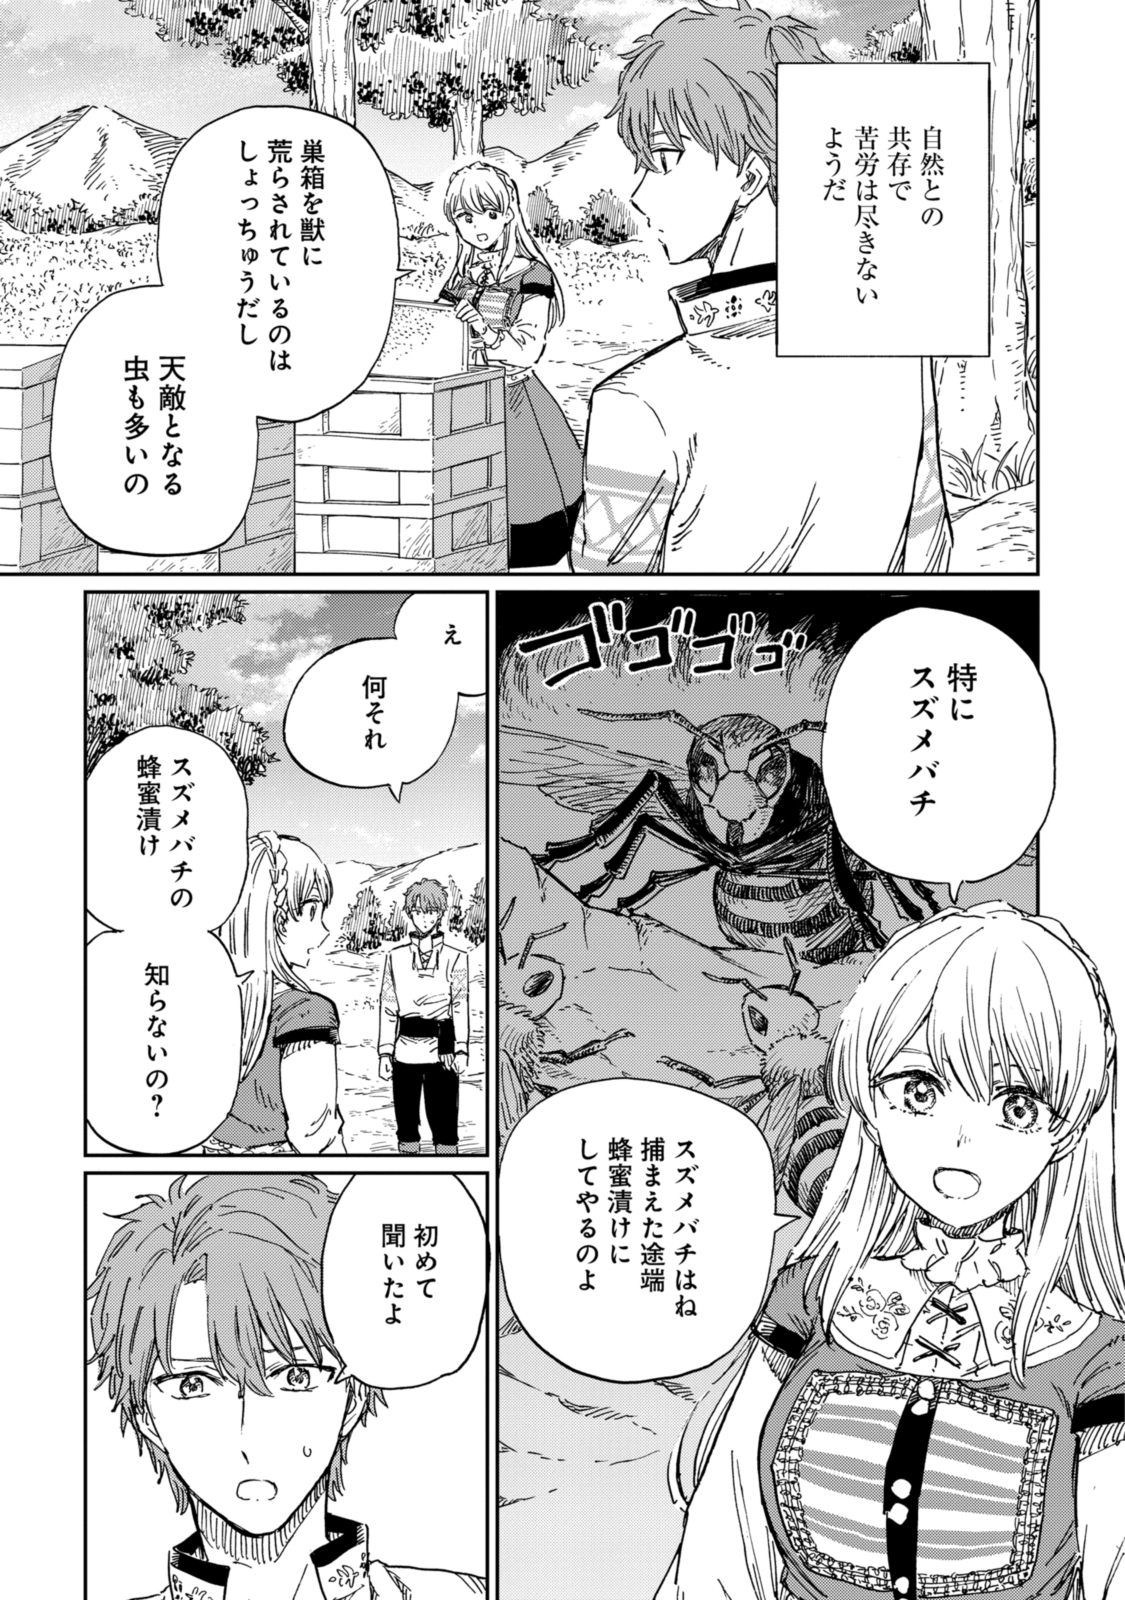 Youhou-ka to Mitsu Kusushi no Hanayome - Chapter 7.1 - Page 5